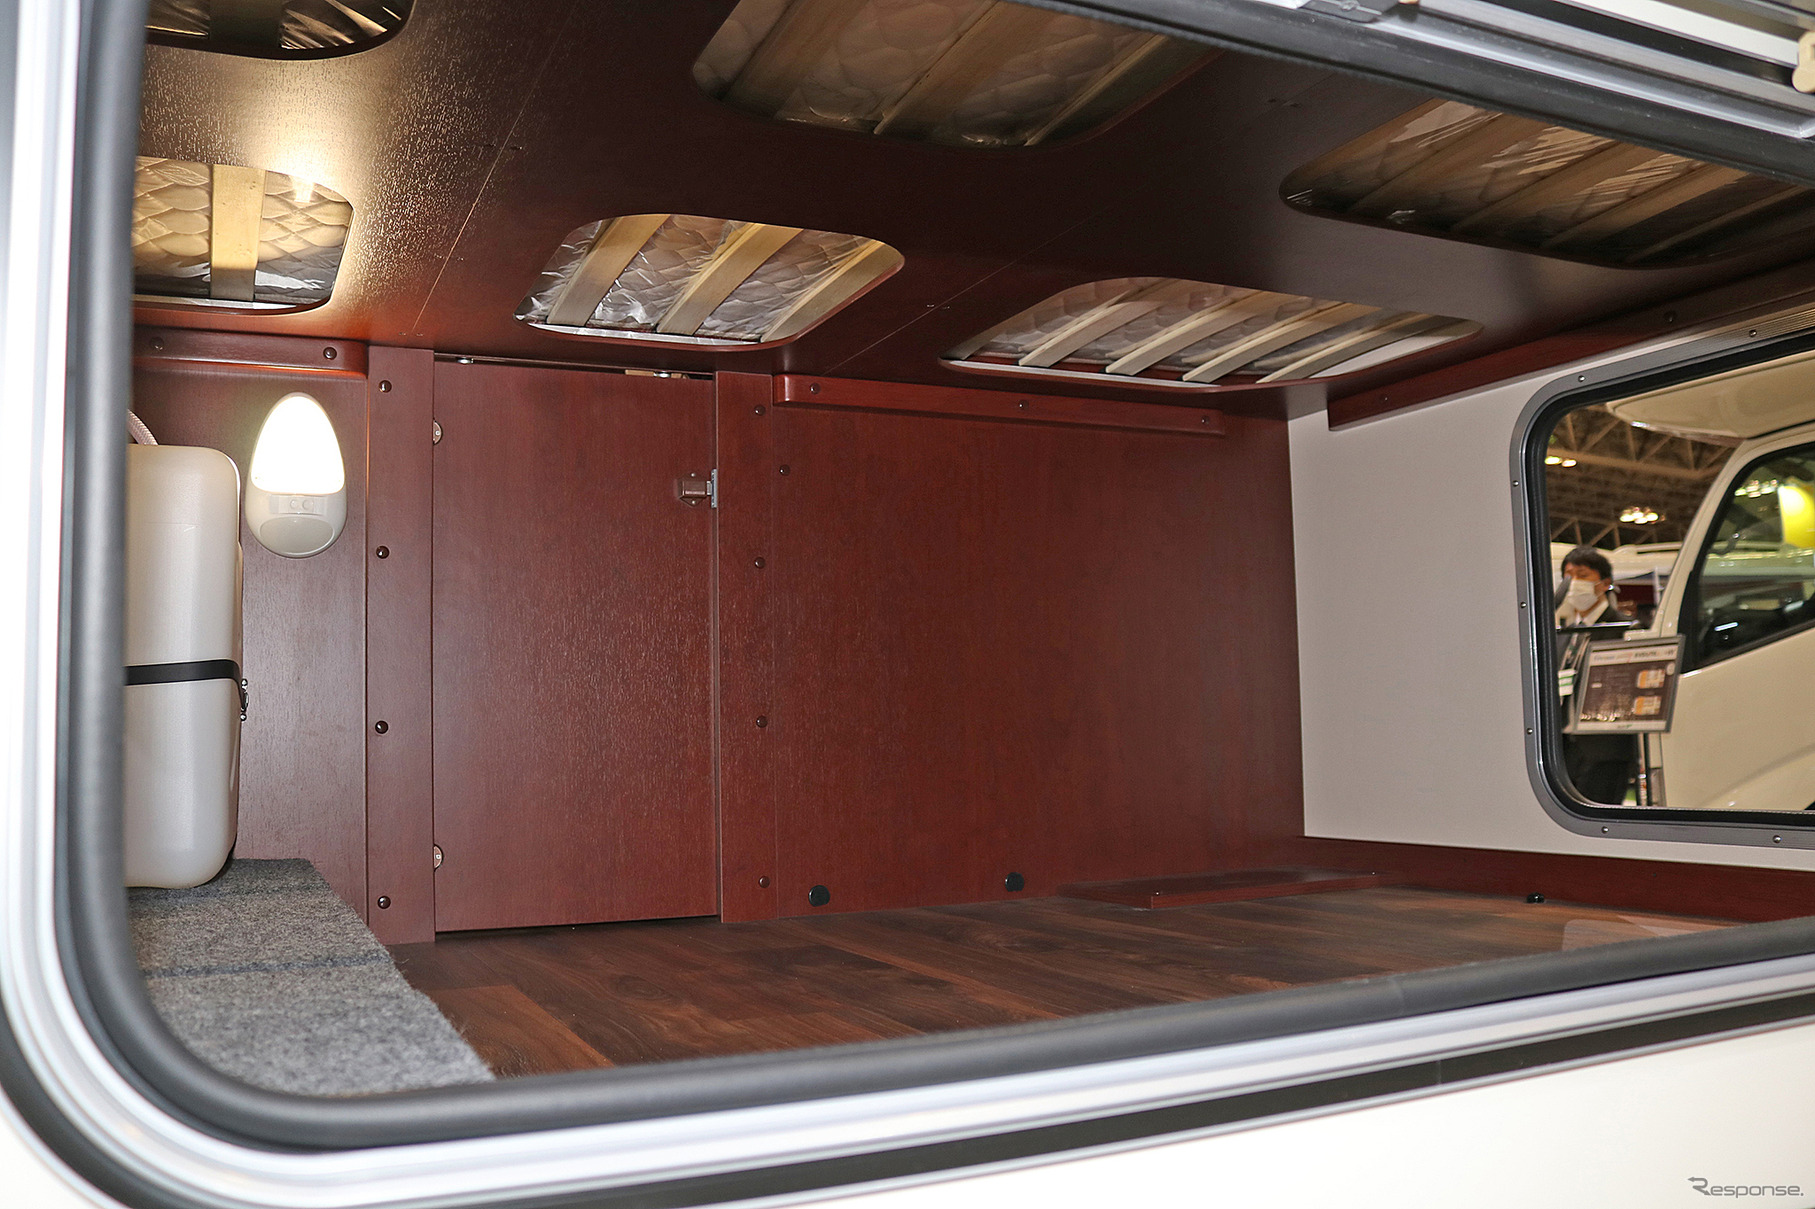 ナッツのクレソンジャーニー エボライト タイプX。後部に2段ベッドと下部に大型の収納を備えた。レジャーギアなどを積み込むにも便利な仕様だ。